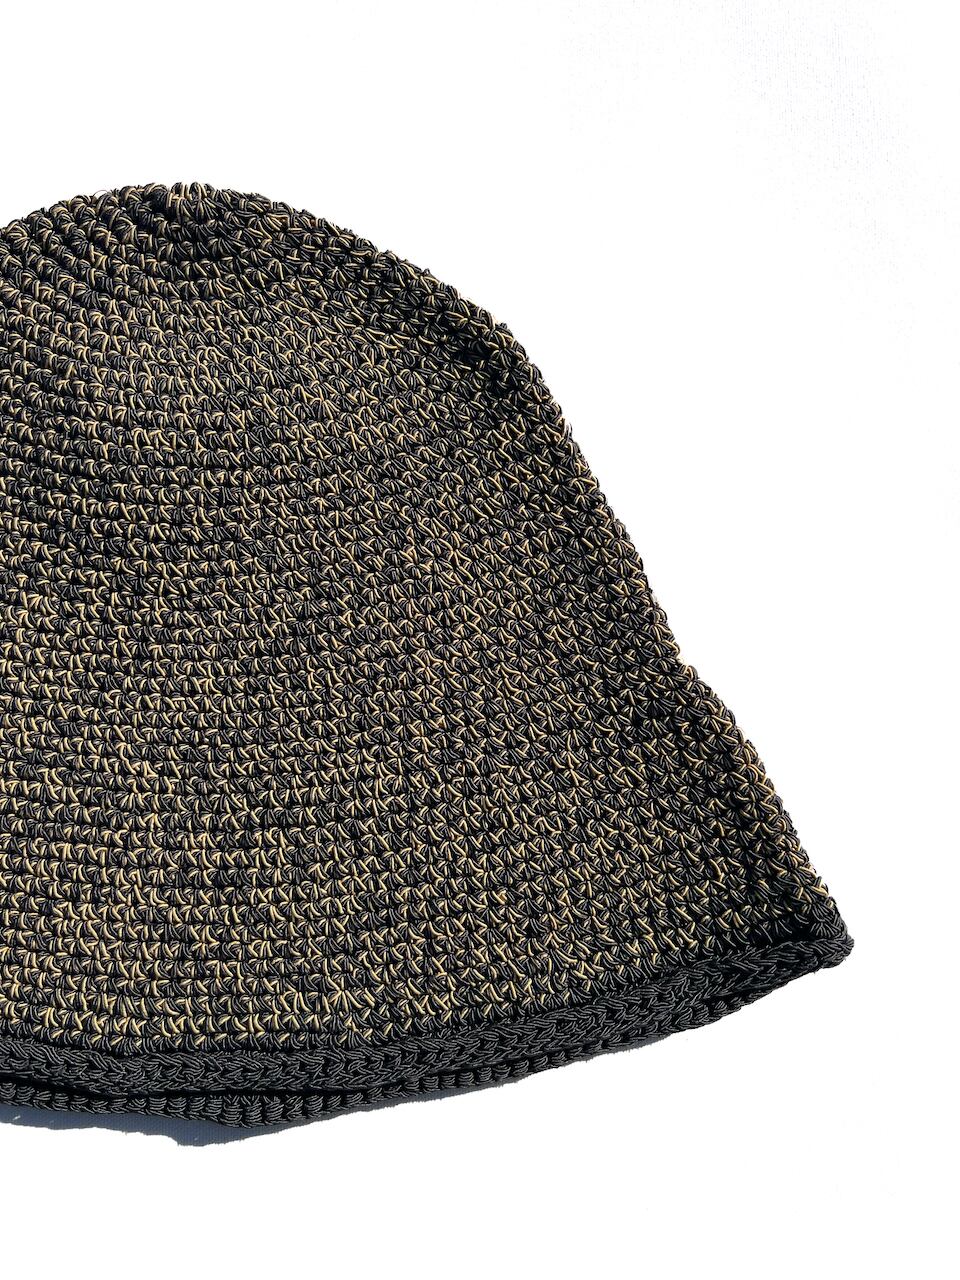 COMFORTABLE REASON / Crochet Hat | EE ONLINE STORE -